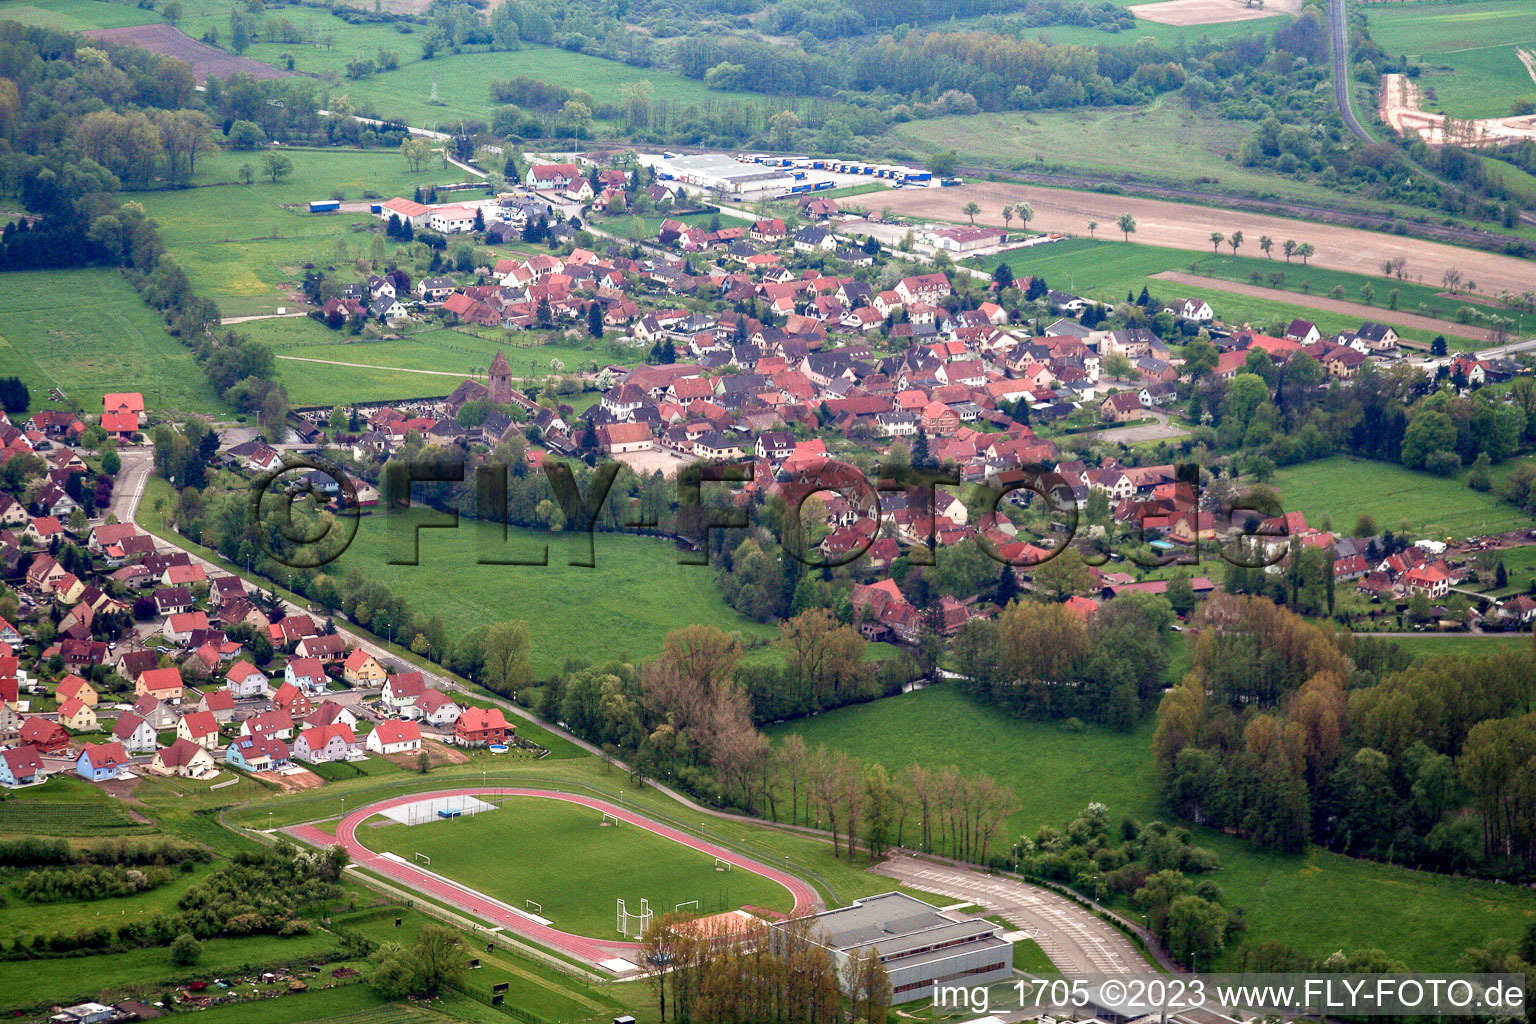 Altenstadt im Bundesland Bas-Rhin, Frankreich von der Drohne aus gesehen